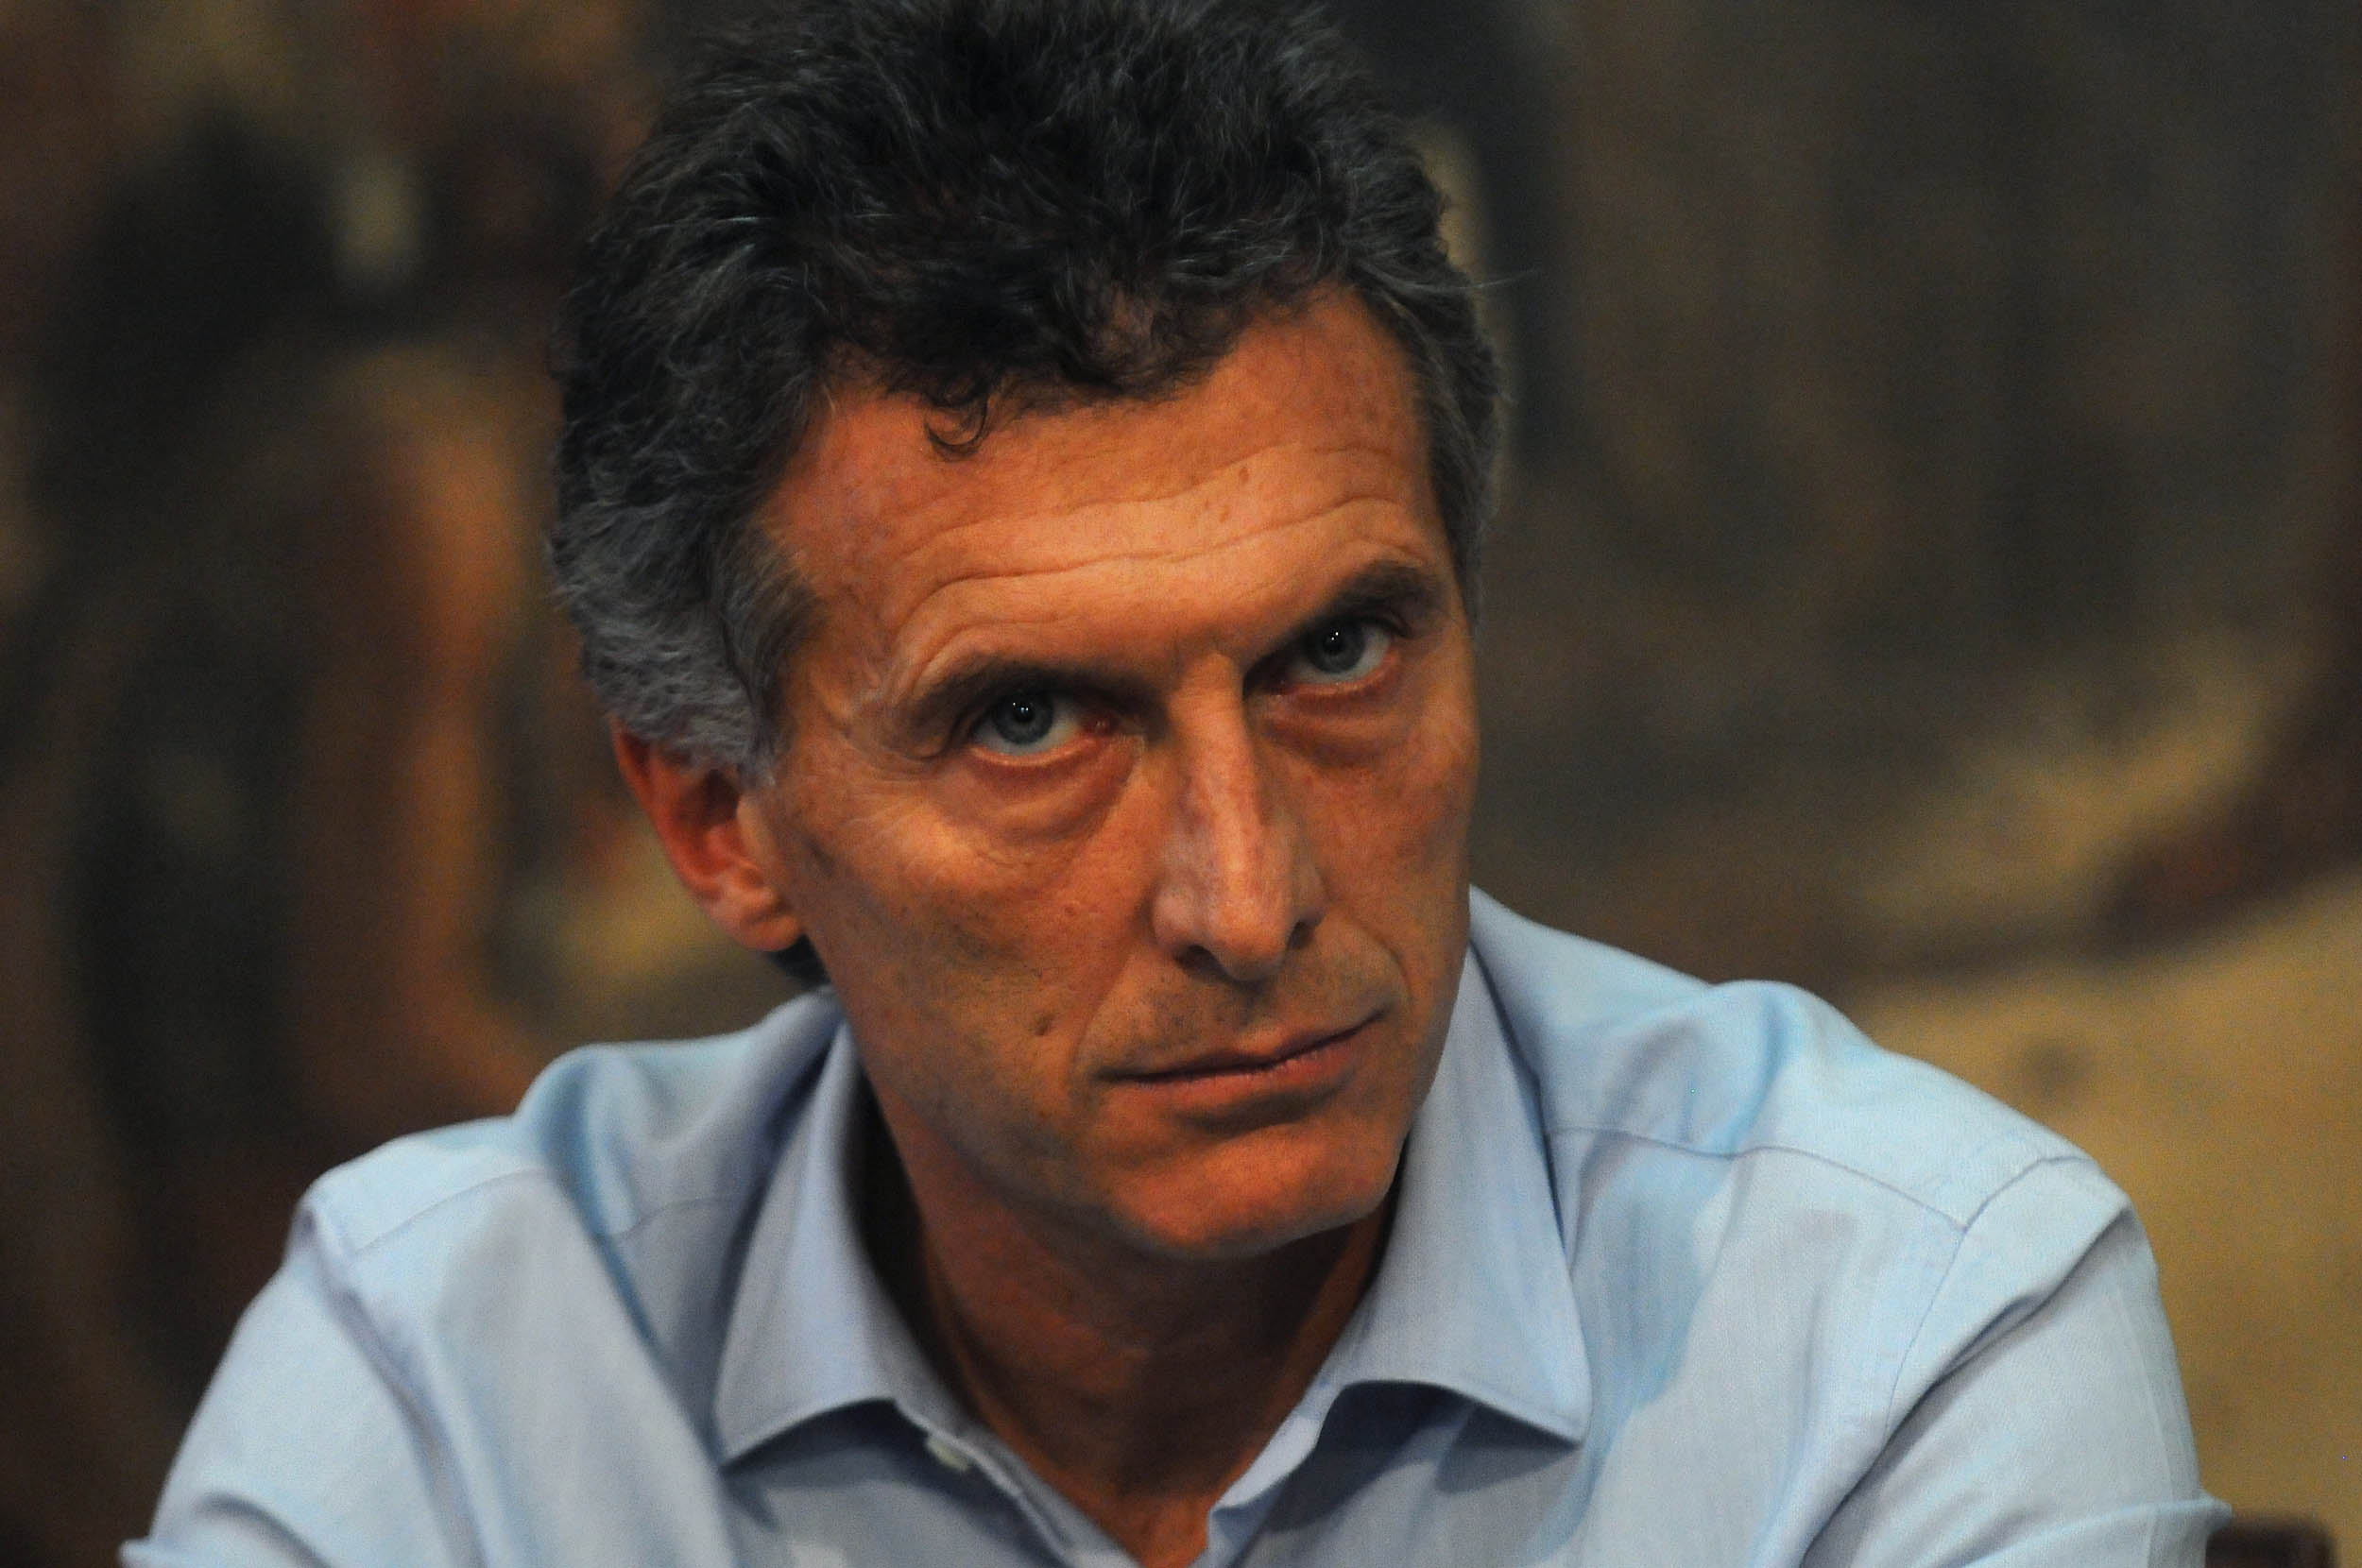 El nuevo mandatario argentino ha ido anunciado e imponiendo medidas que van en detrimento del pueblo.